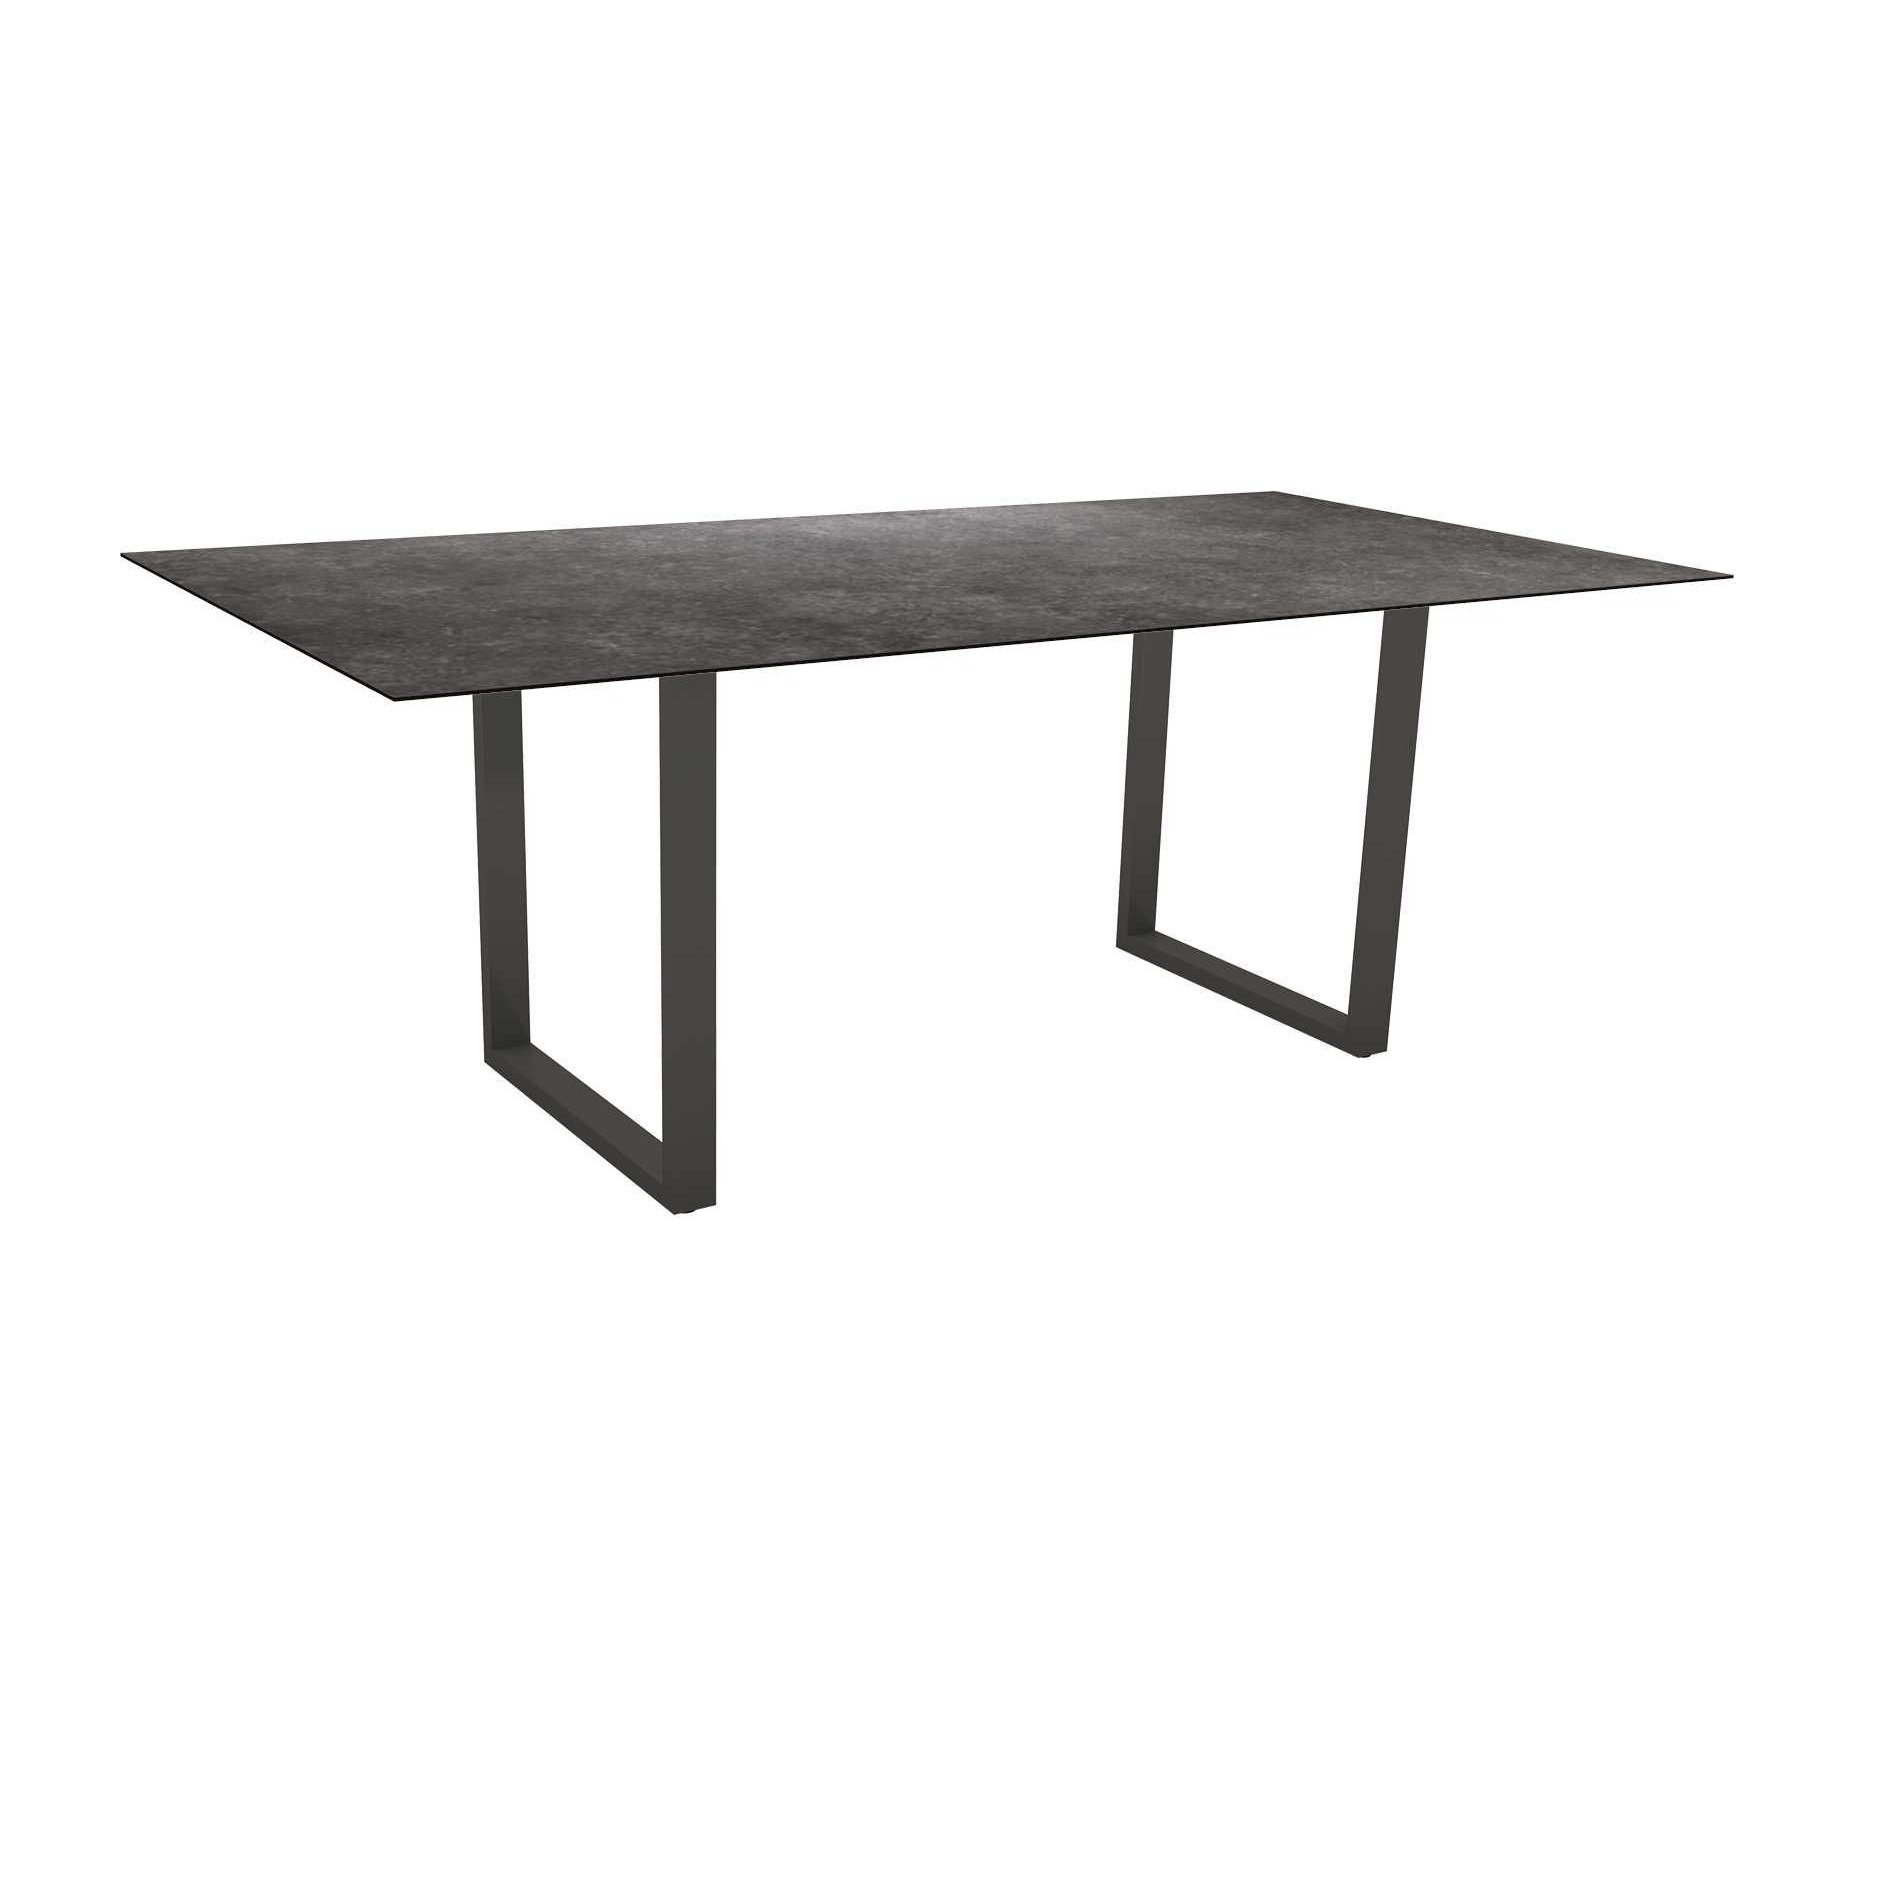 Stern Kufentisch, Maße: 200x100x73 cm, Gestell Aluminium anthrazit, Tischplatte HPL Vintage grau